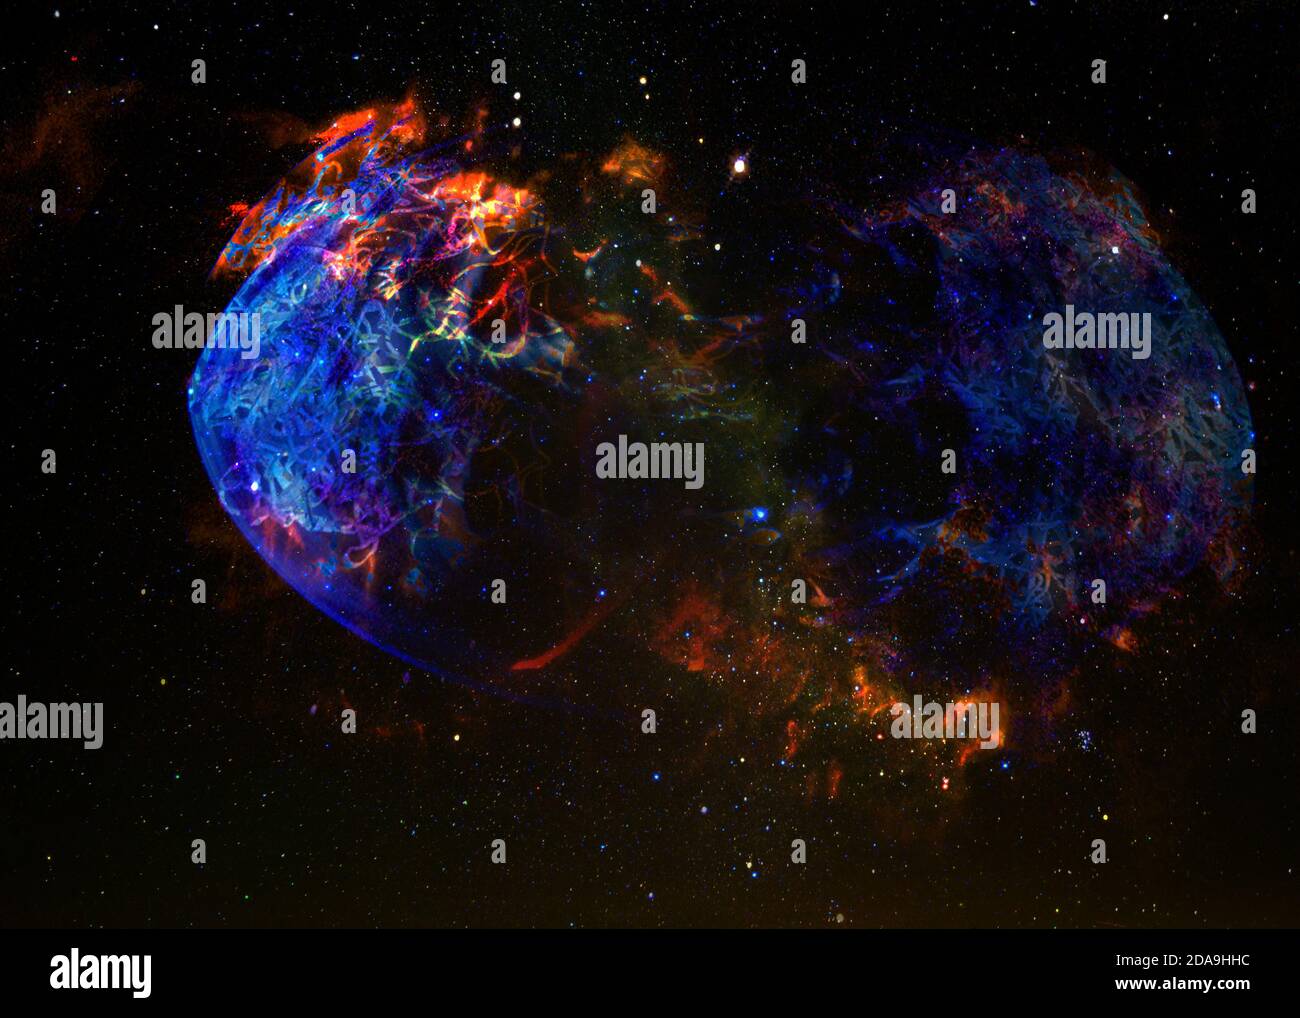 La planète explose dans l'espace. Éléments de cette image fournis par la NASA Banque D'Images